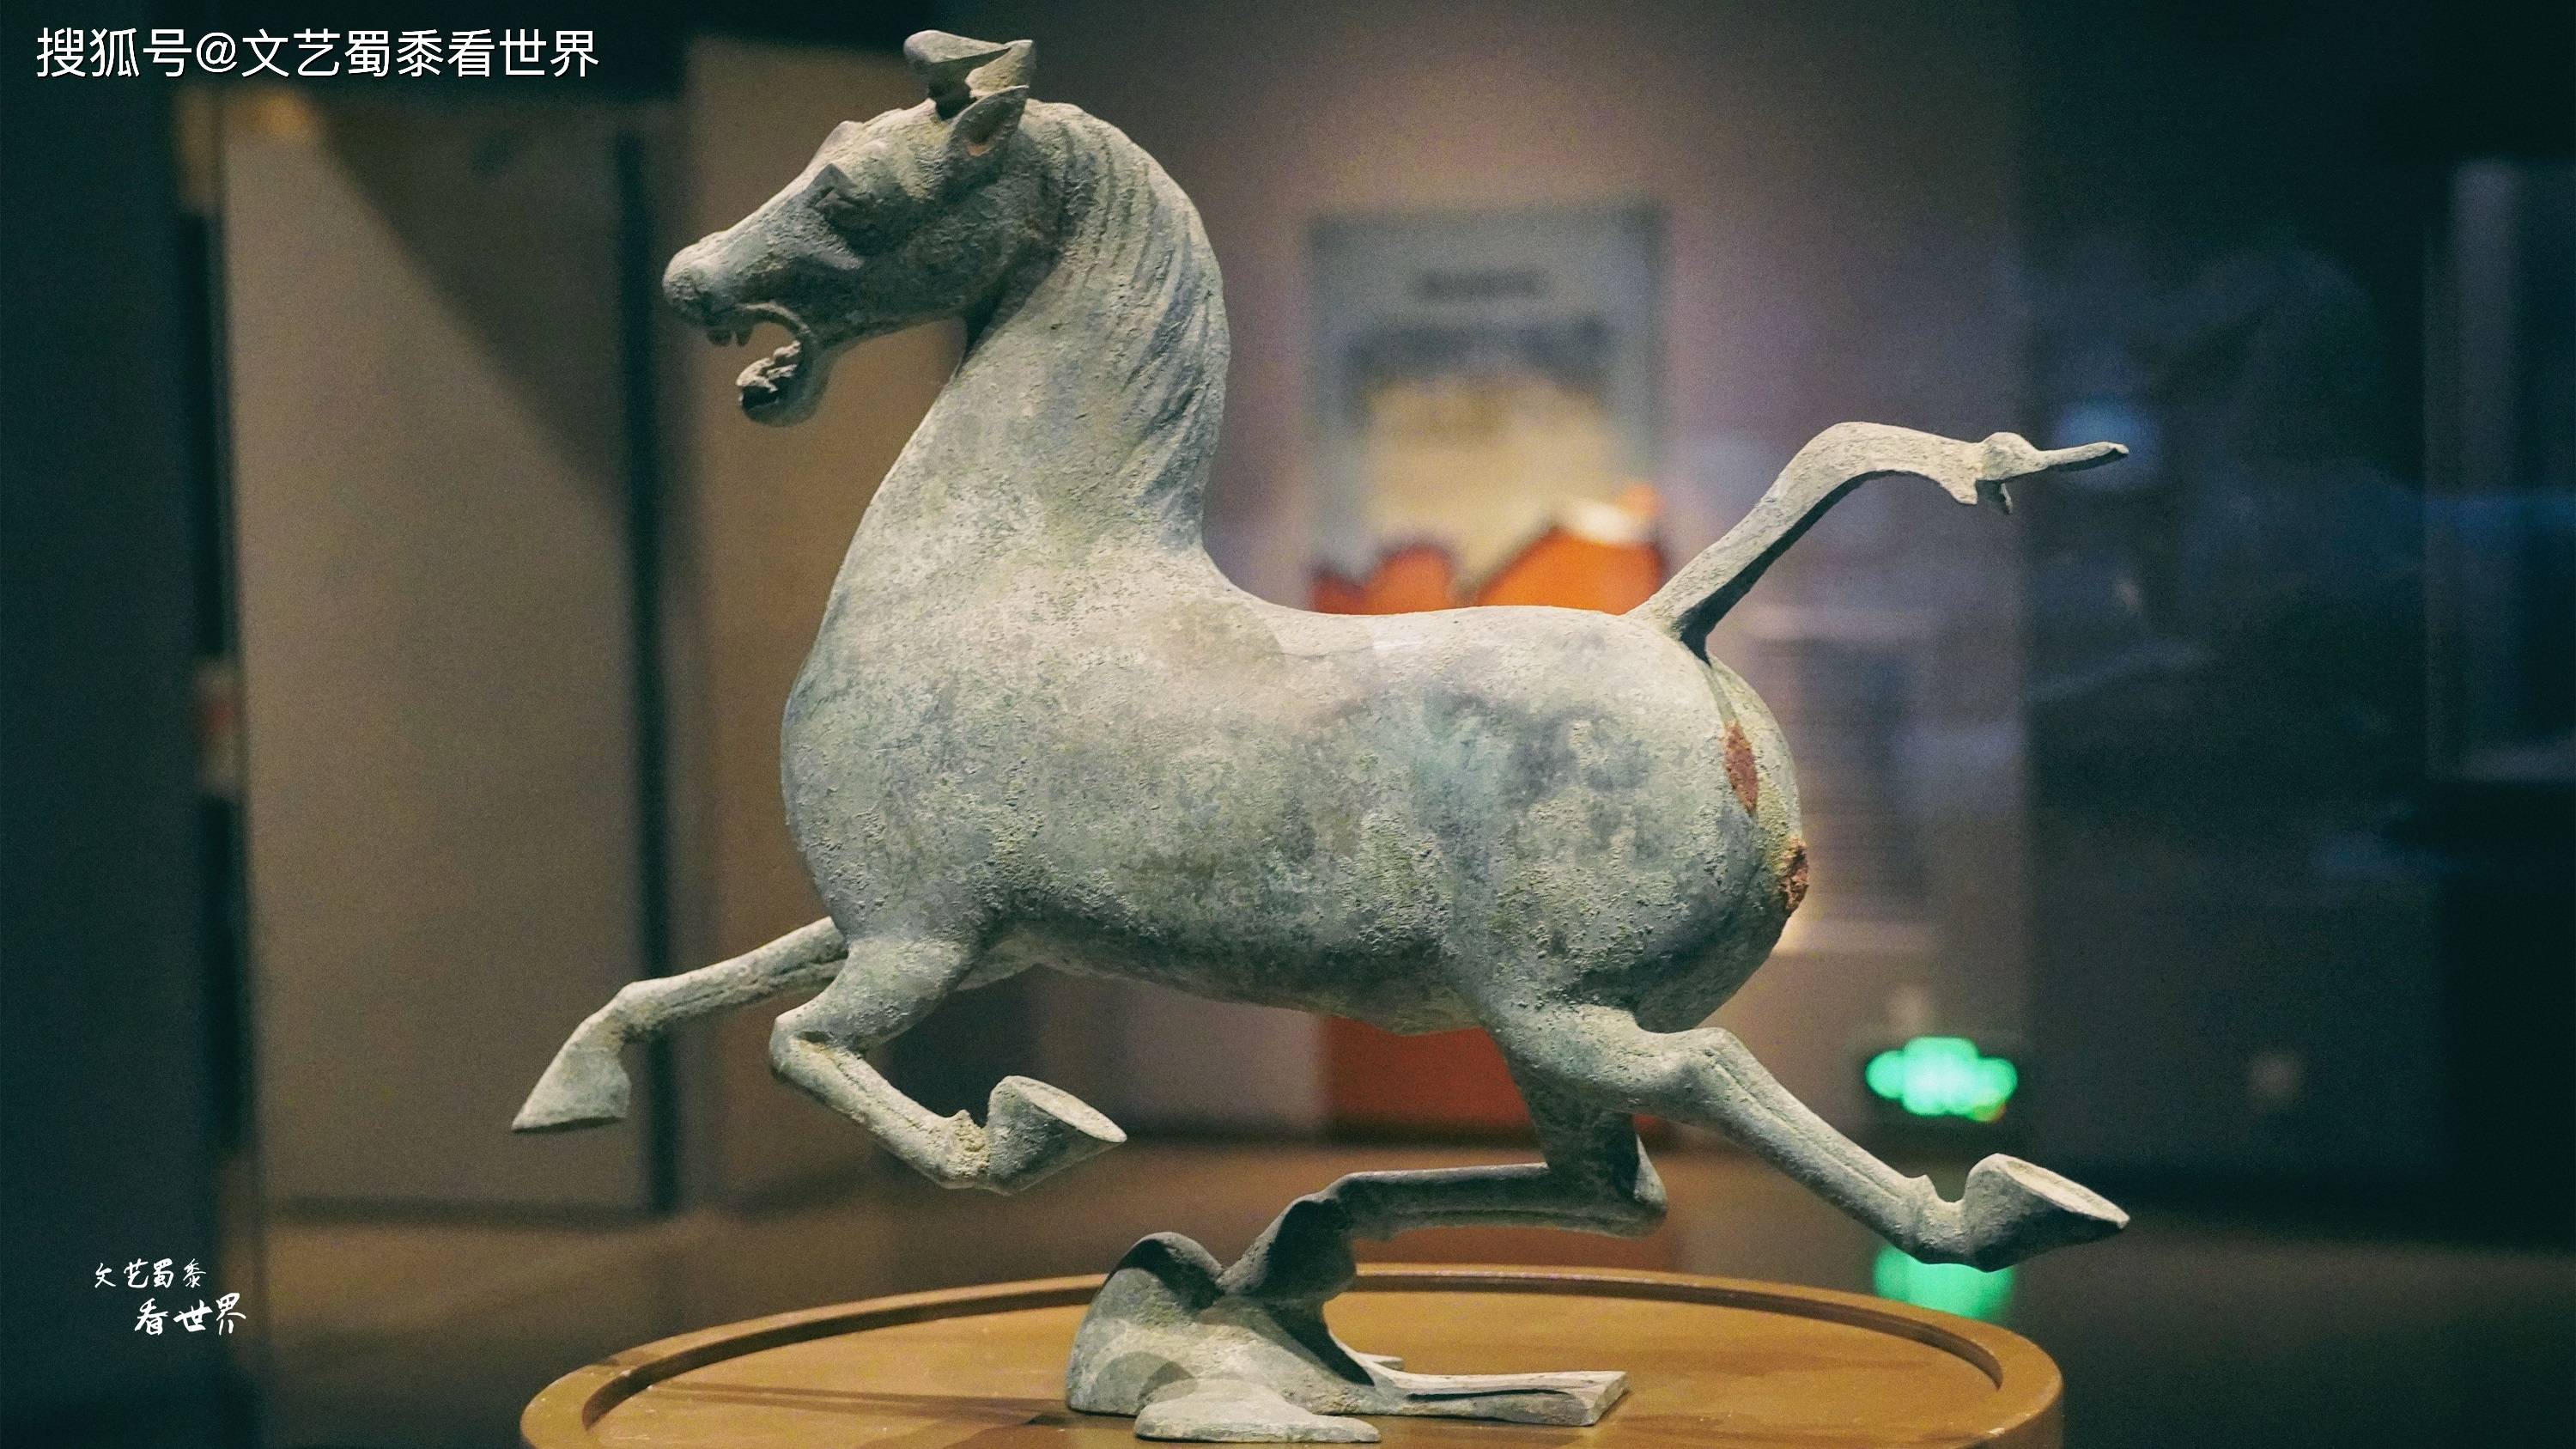 原创兰州甘肃省博物馆,藏着太多的国宝,在那里能见到国宝铜奔马真品